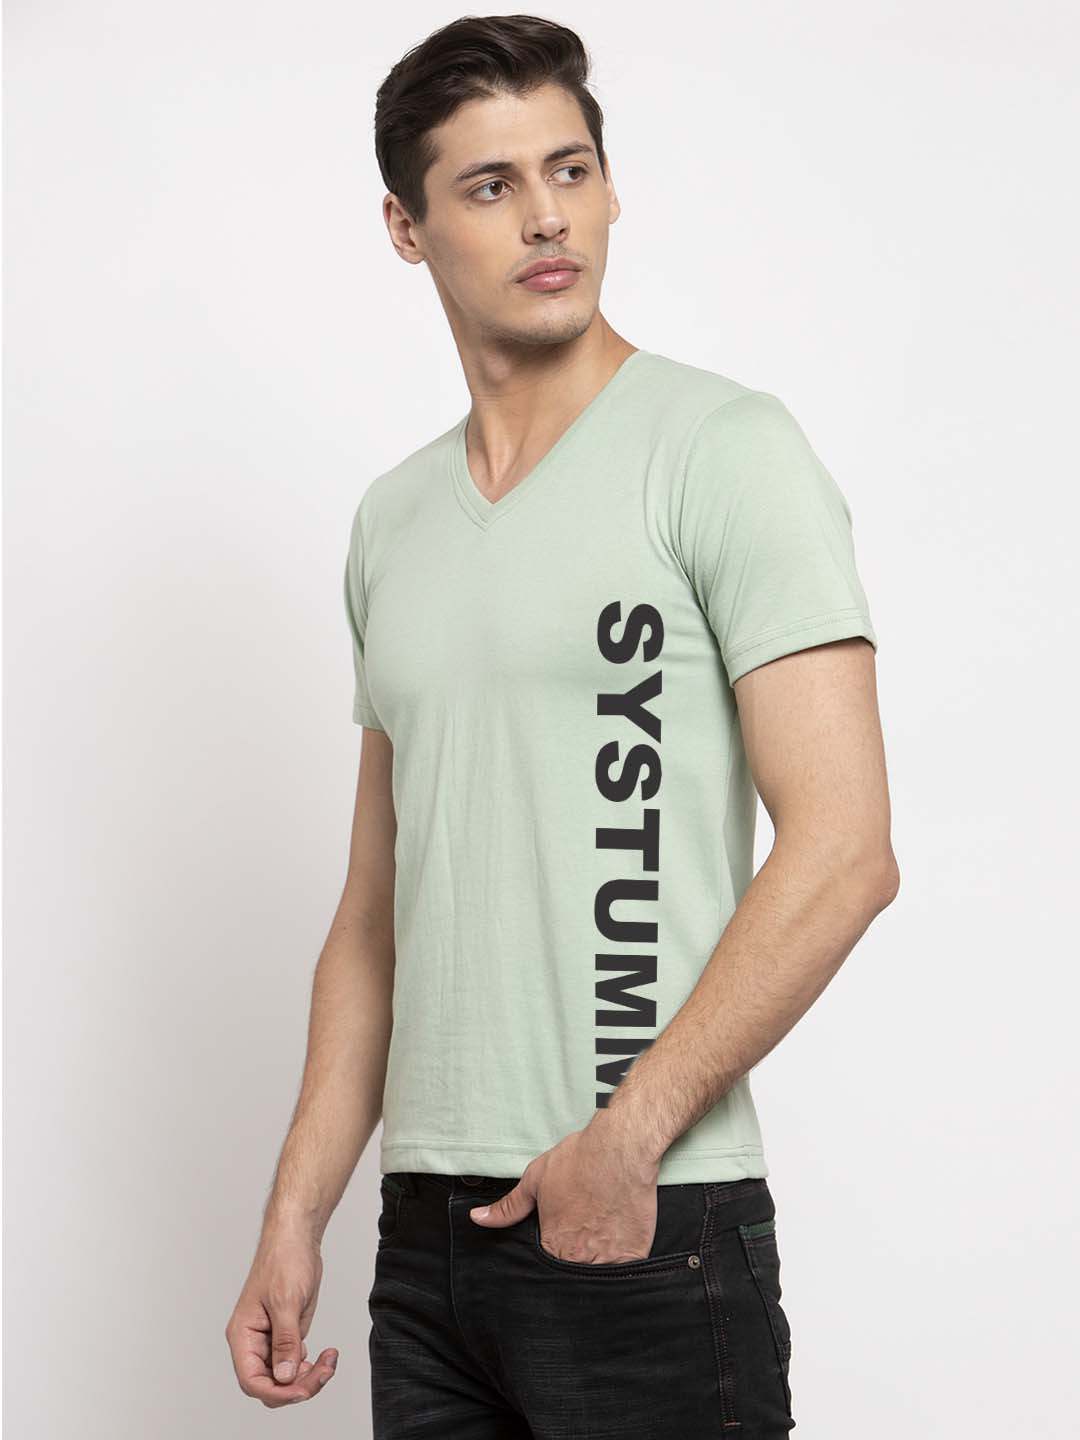 Men's System Cotton Regular Fit V Neck T-Shirt - Friskers